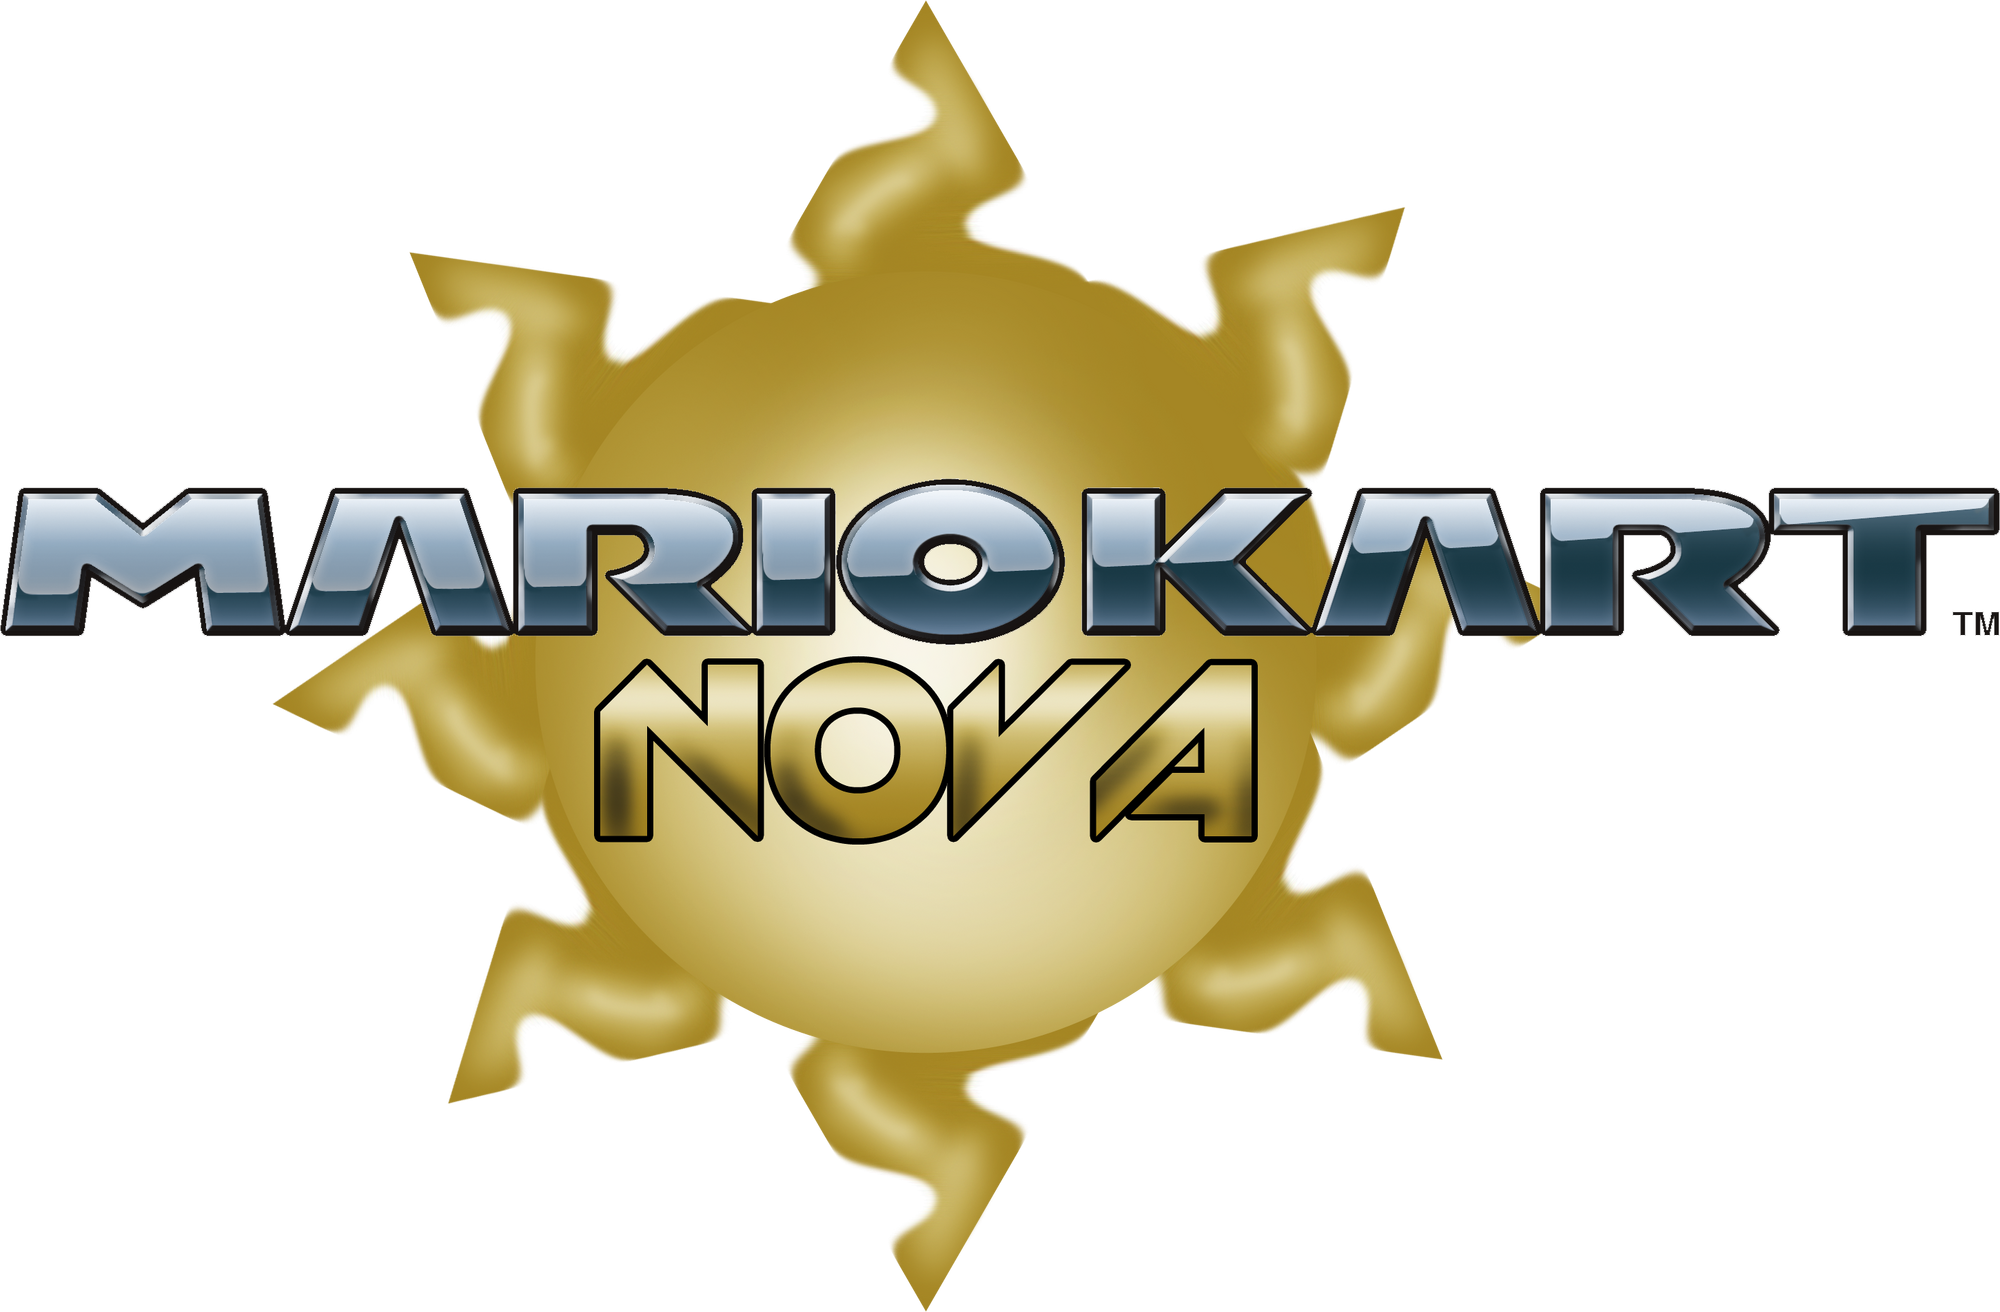 Mario Kart Nova Fantendo Nintendo Fanon Wiki Fandom Powered By Wikia 1252